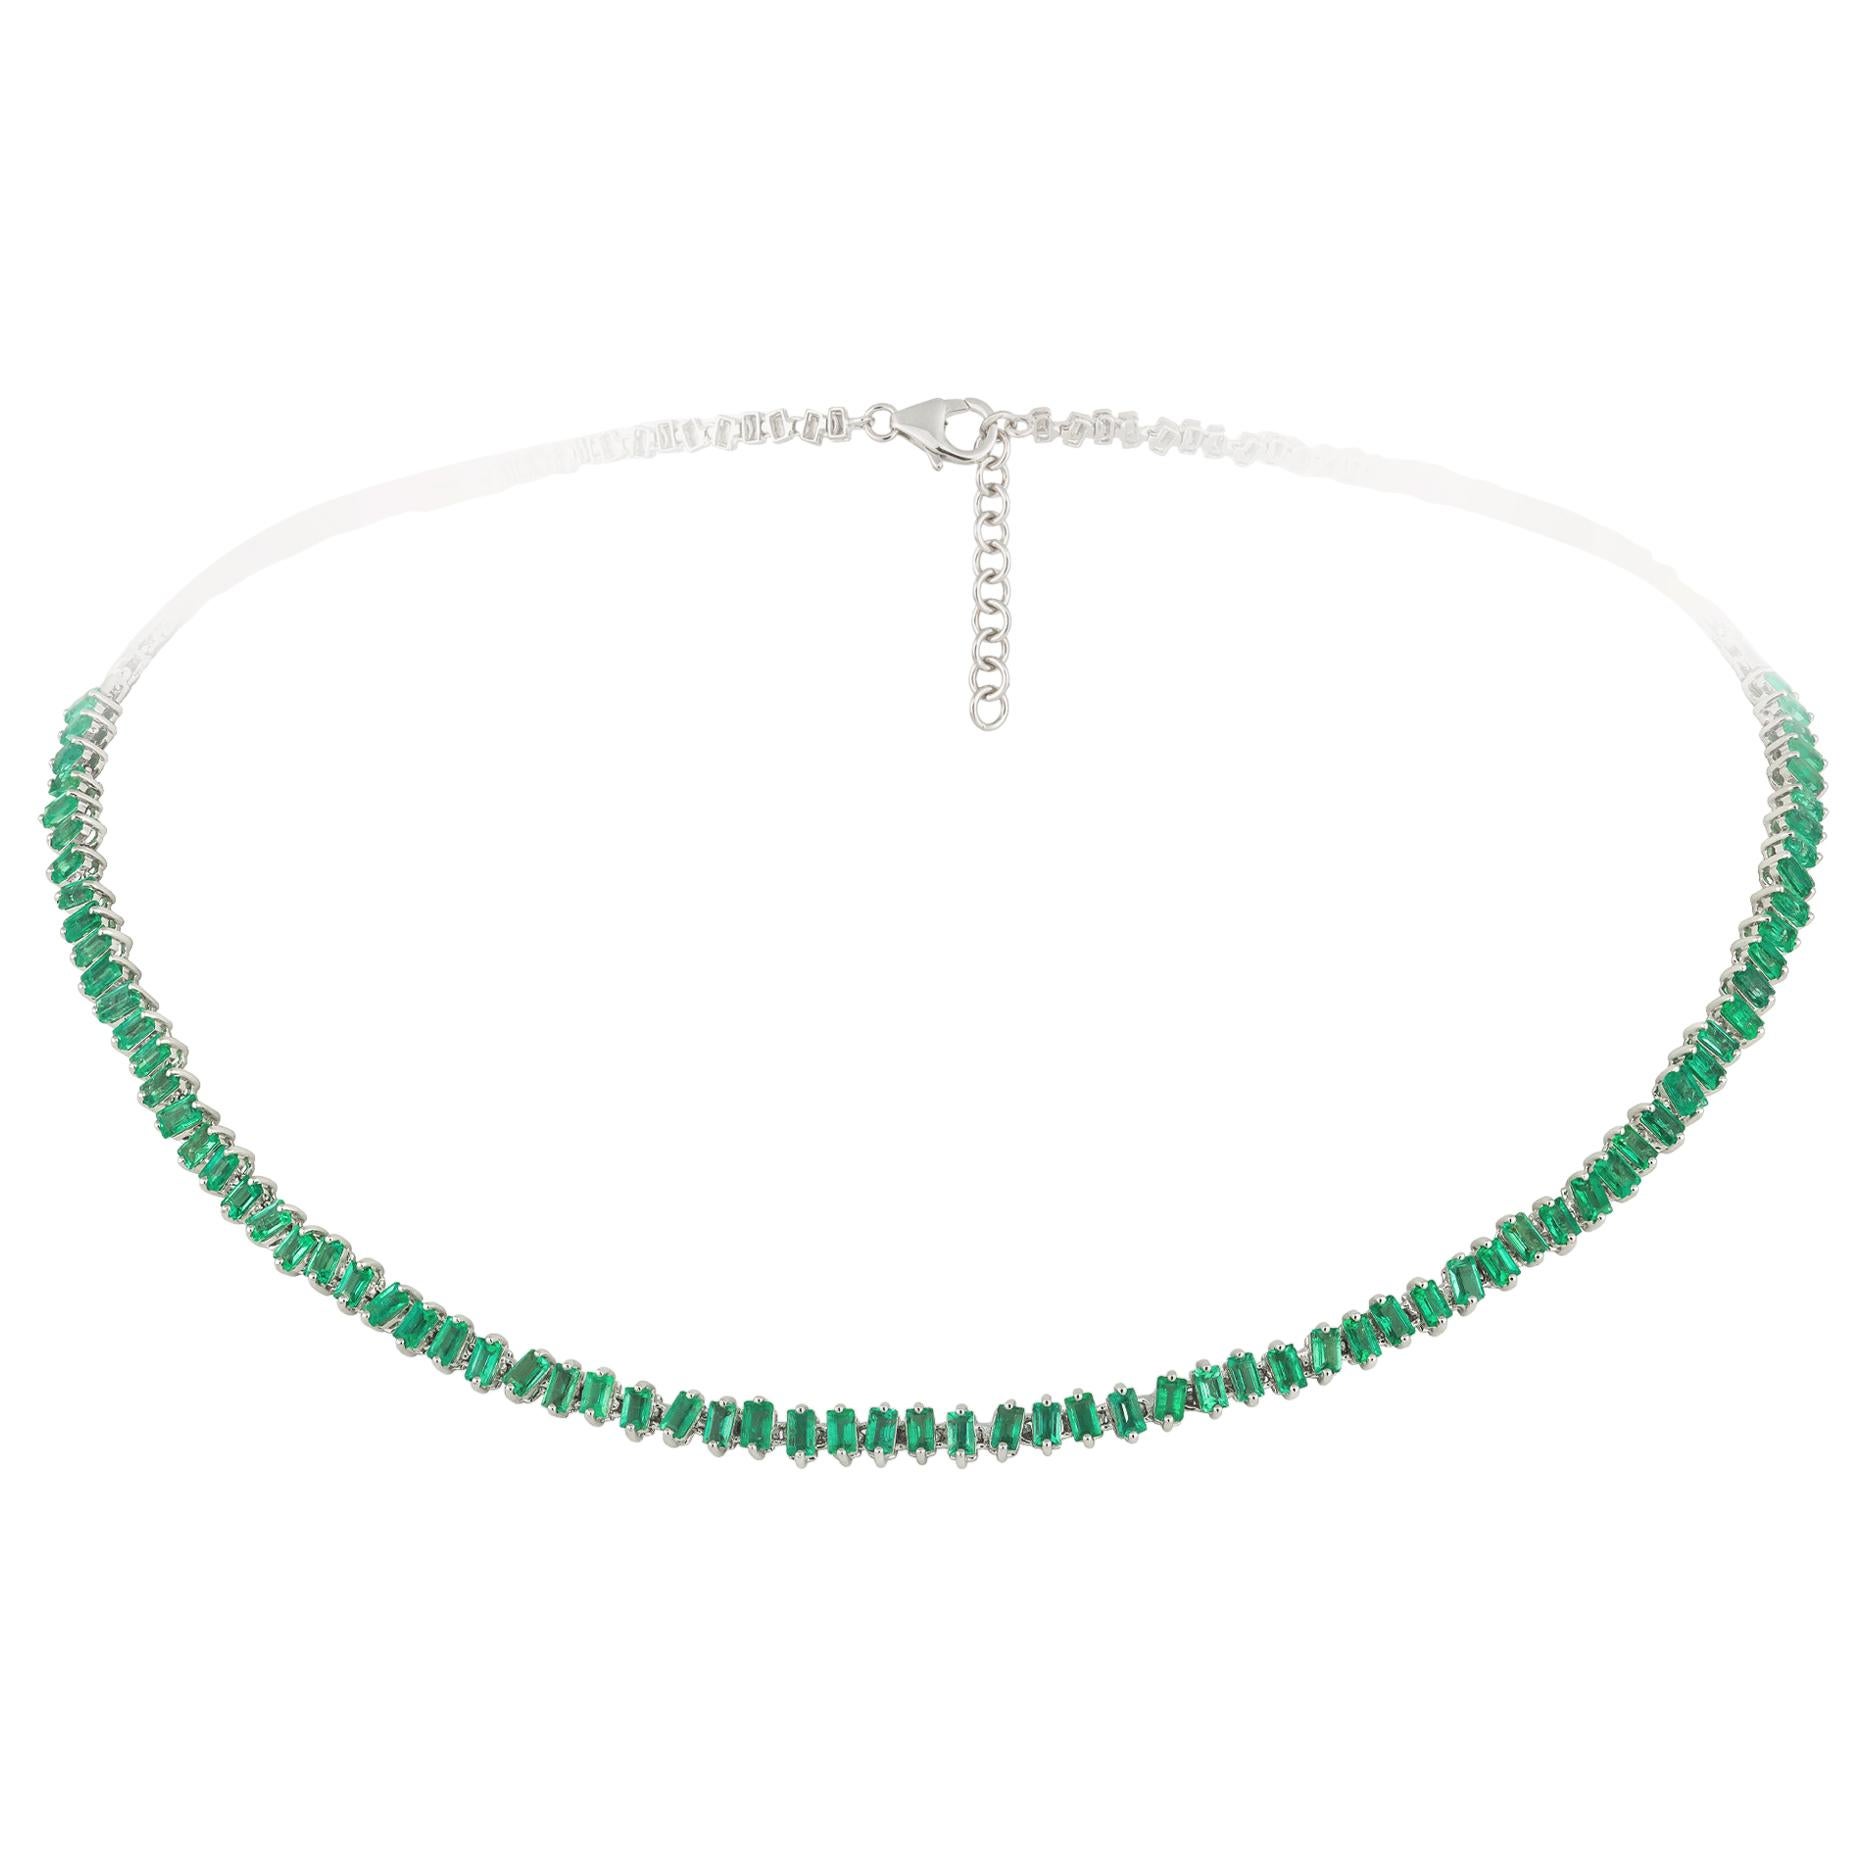 Für sie eine atemberaubende Smaragd-Halskette aus 18 Karat Weißgold